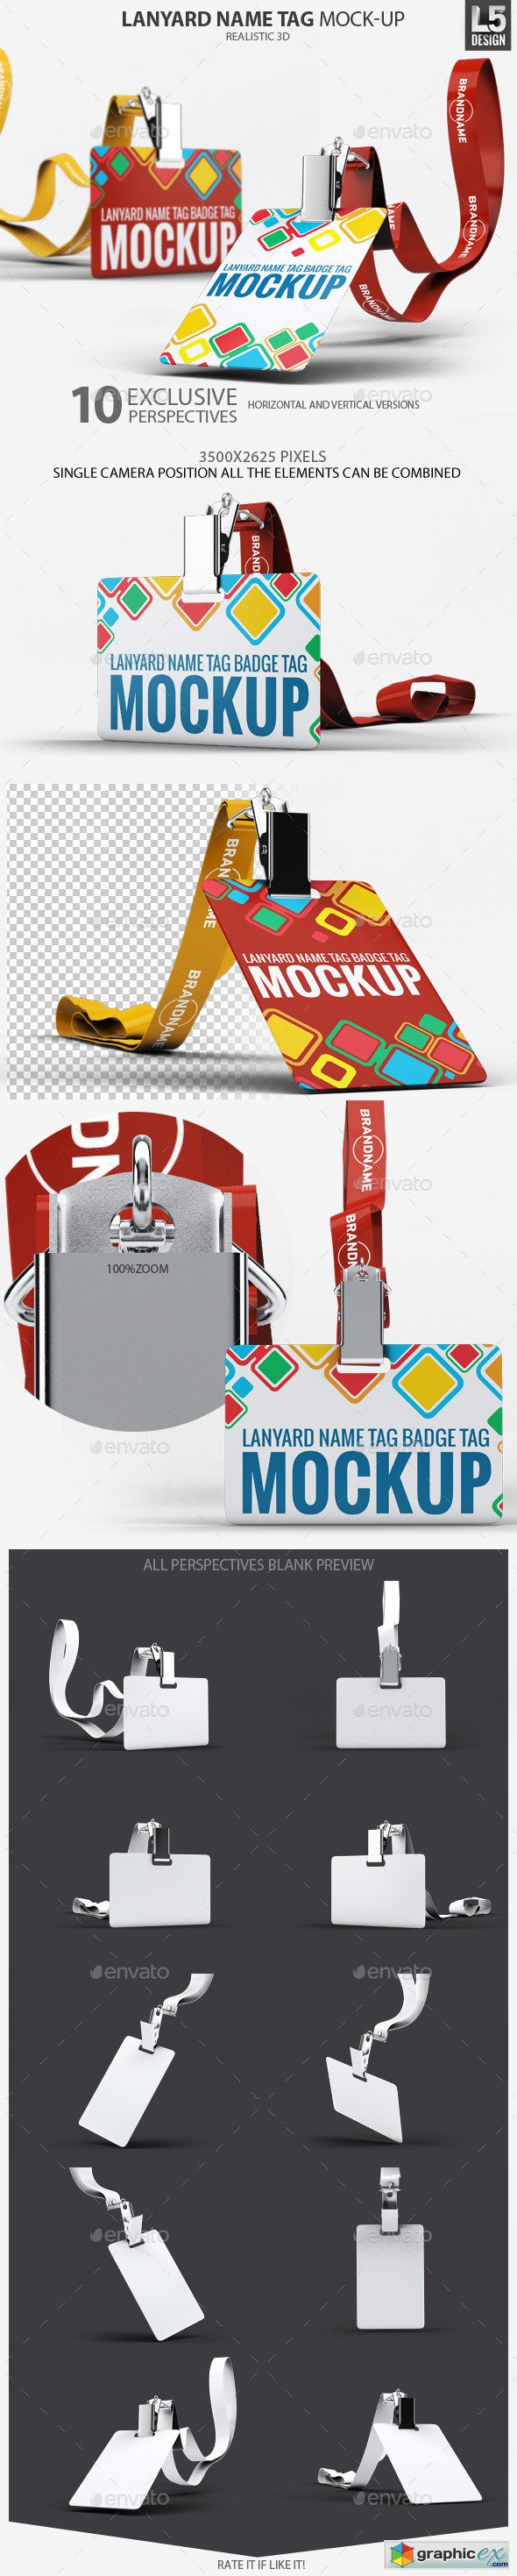  Lanyard Name Tag Badge Mockup